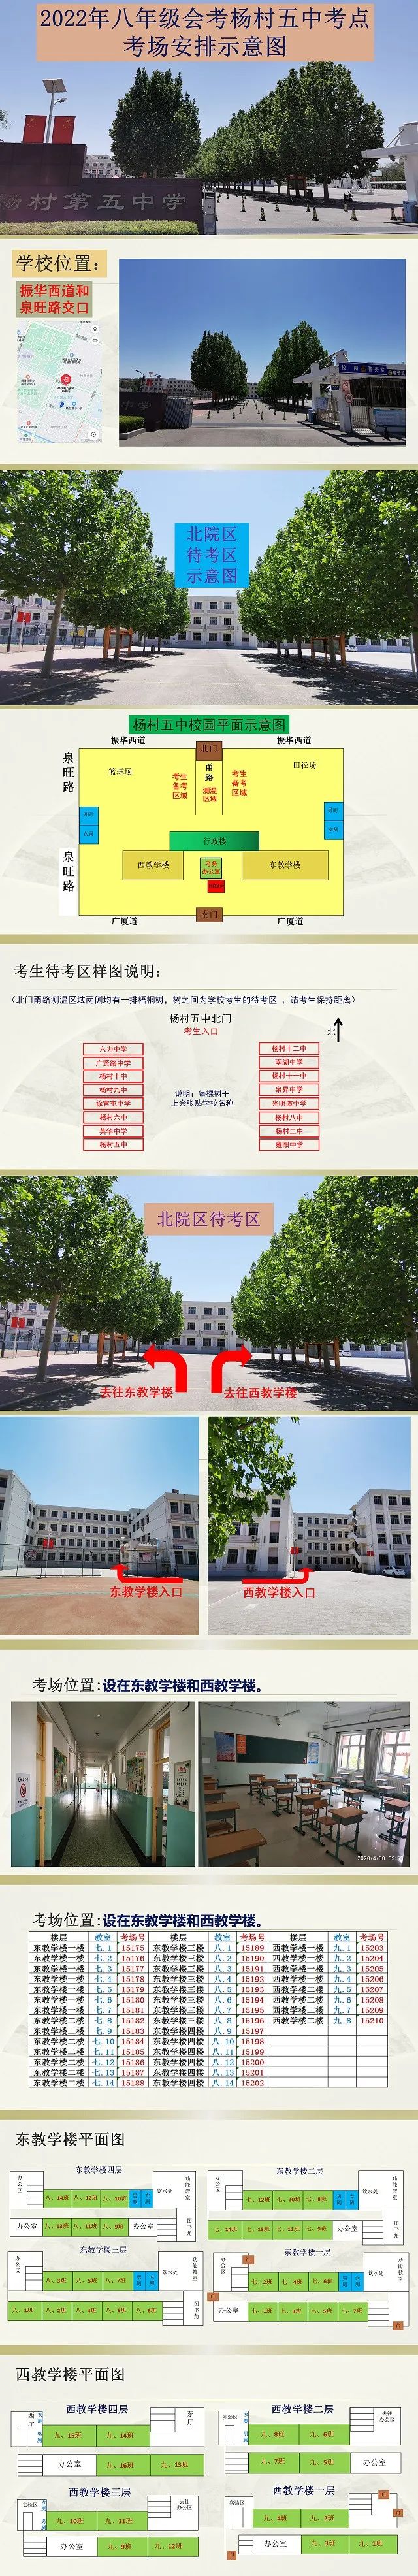 2022年天津武清区中考考点考场示意图(图51)